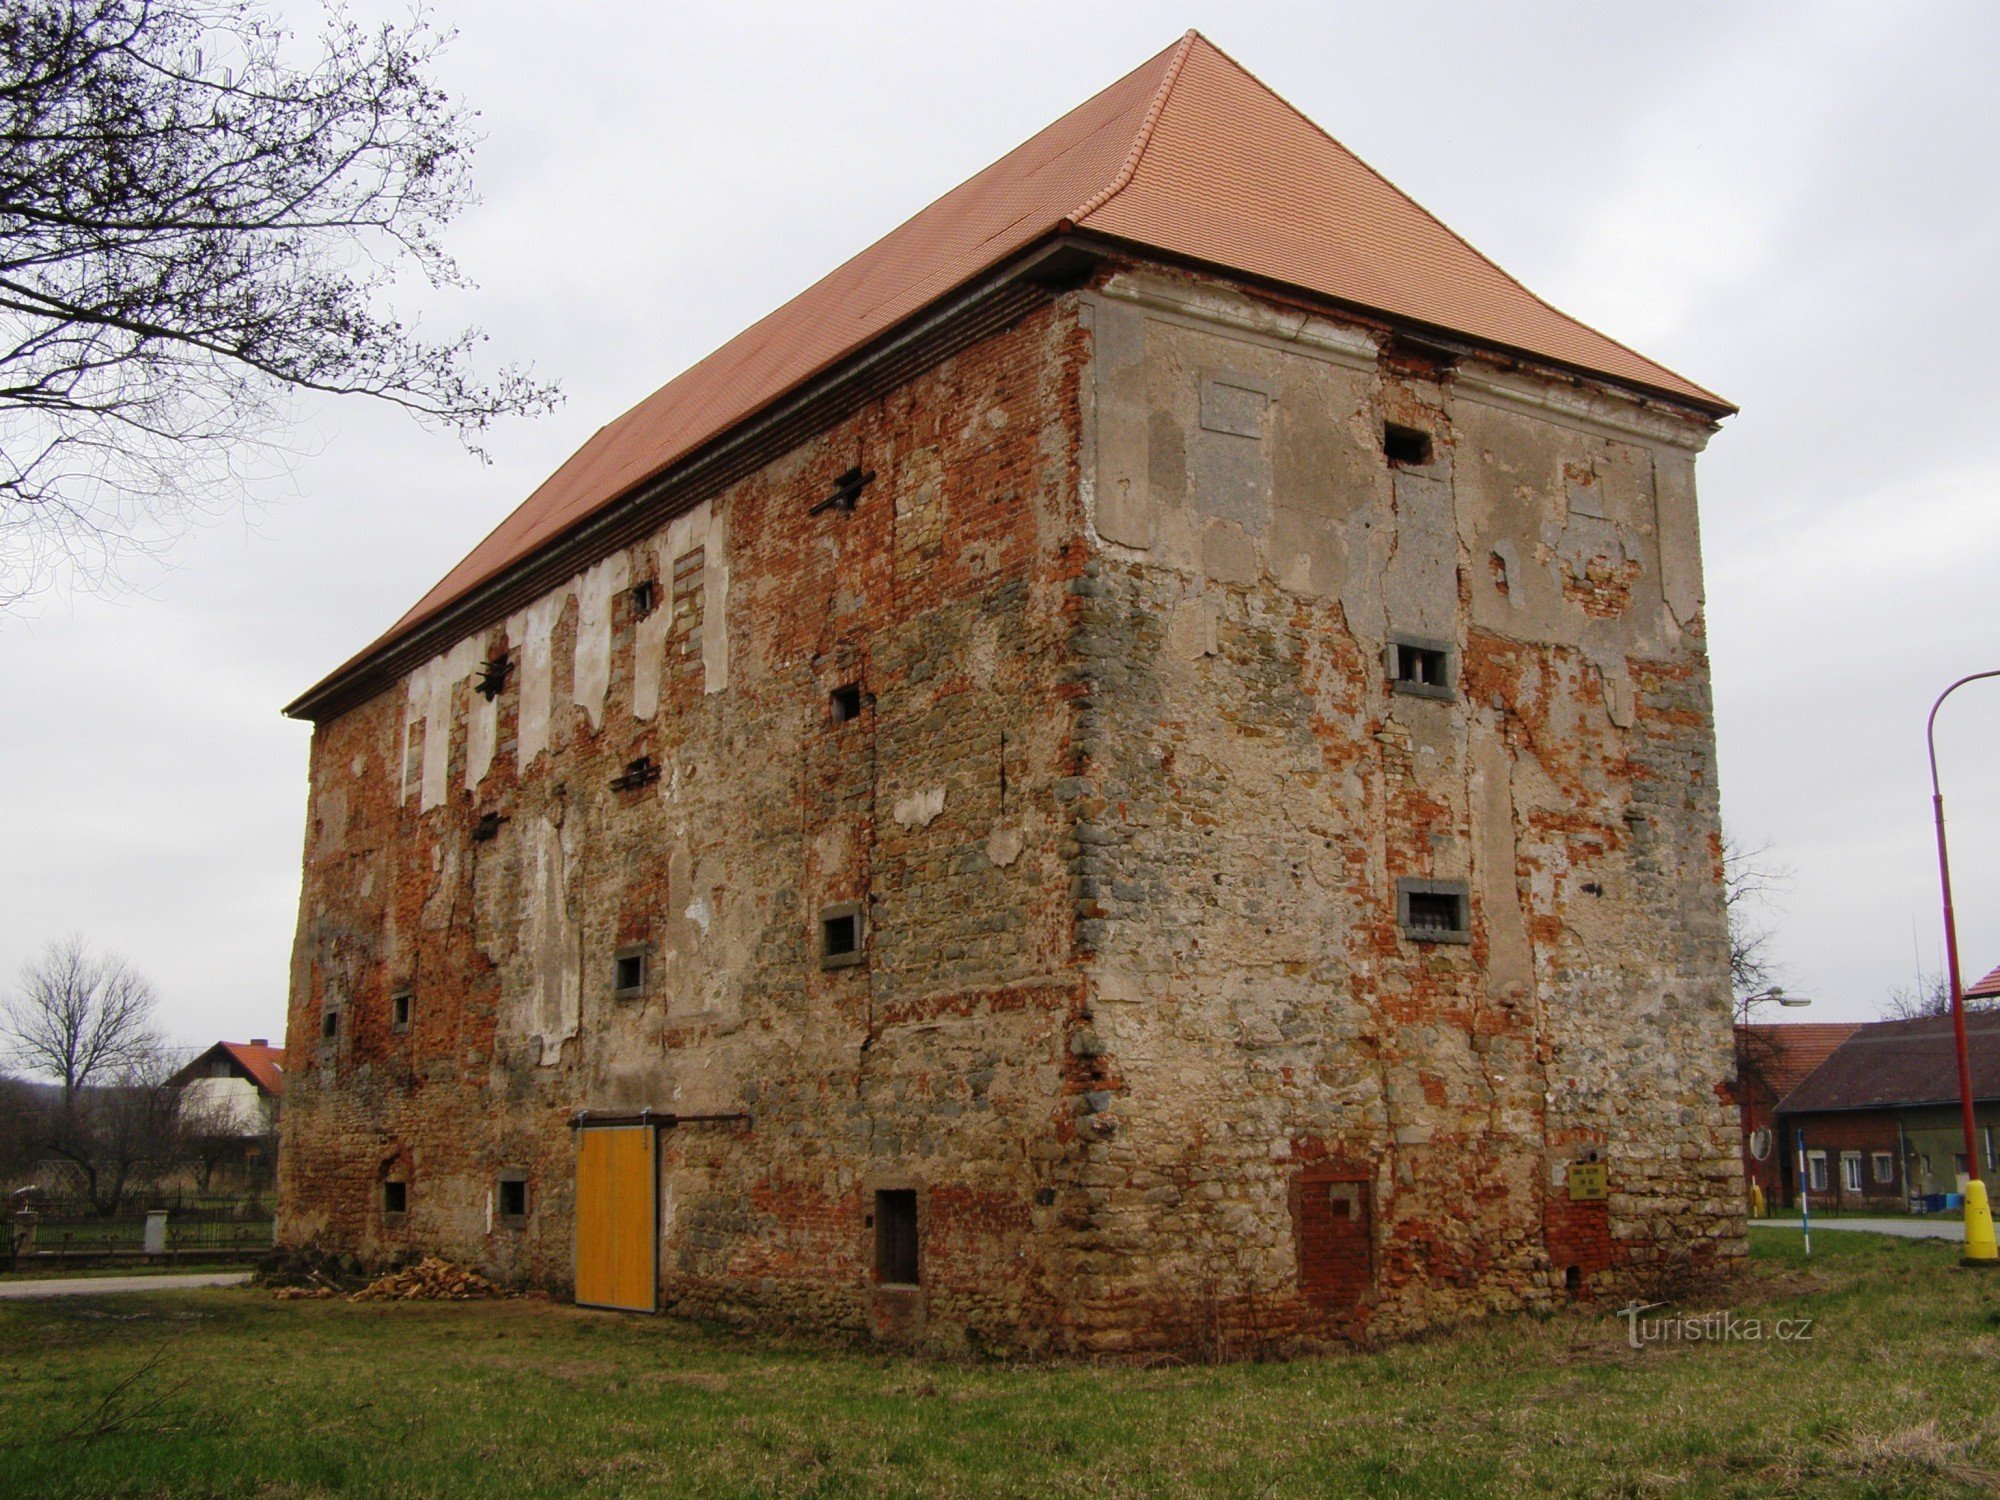 Догалице - крепость, зернохранилище